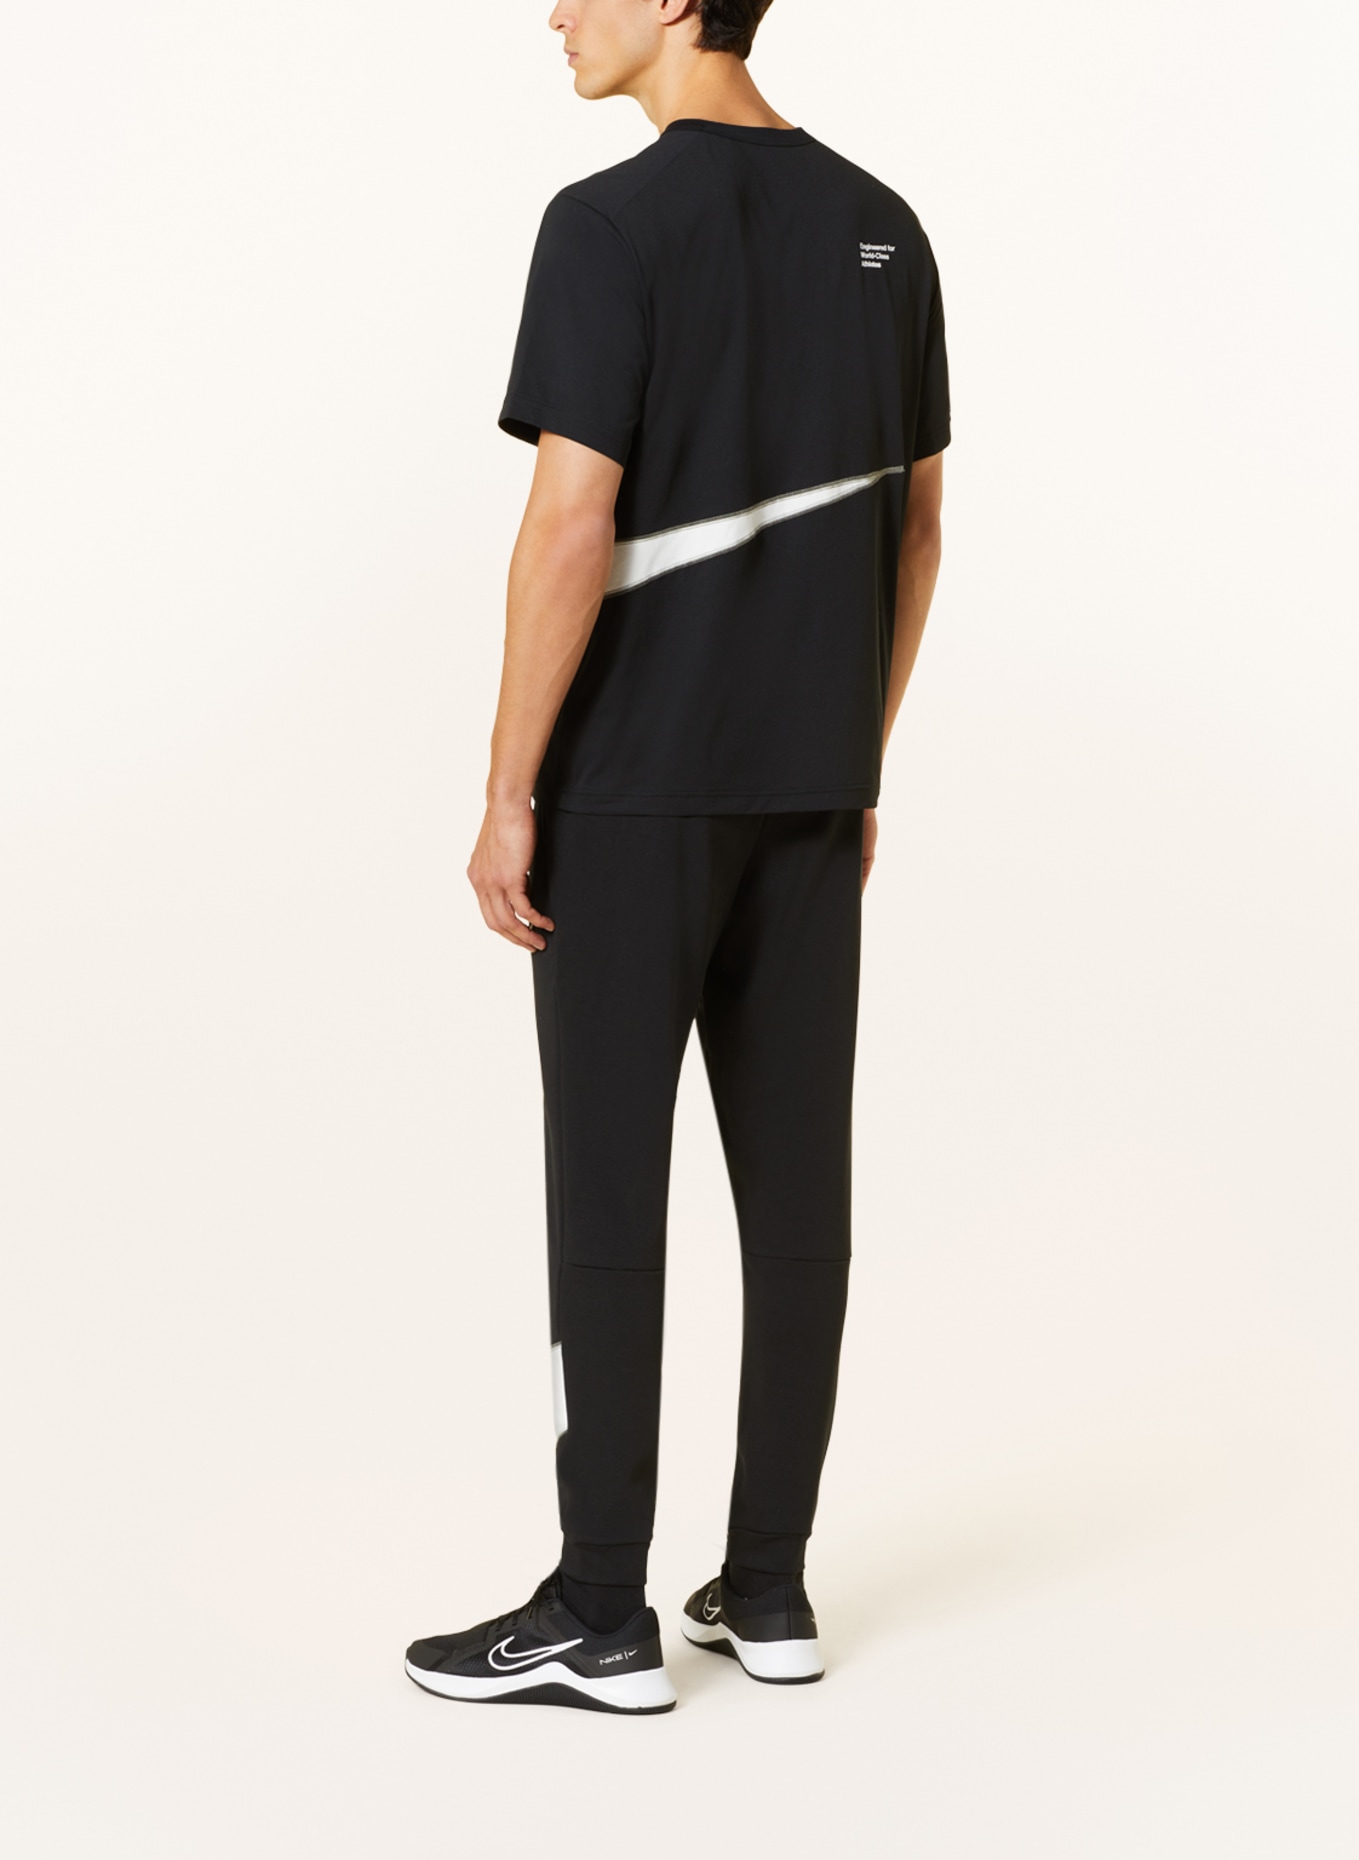 Nike T-shirt DRI-FIT UV HYVERSE, Color: BLACK/ WHITE (Image 3)